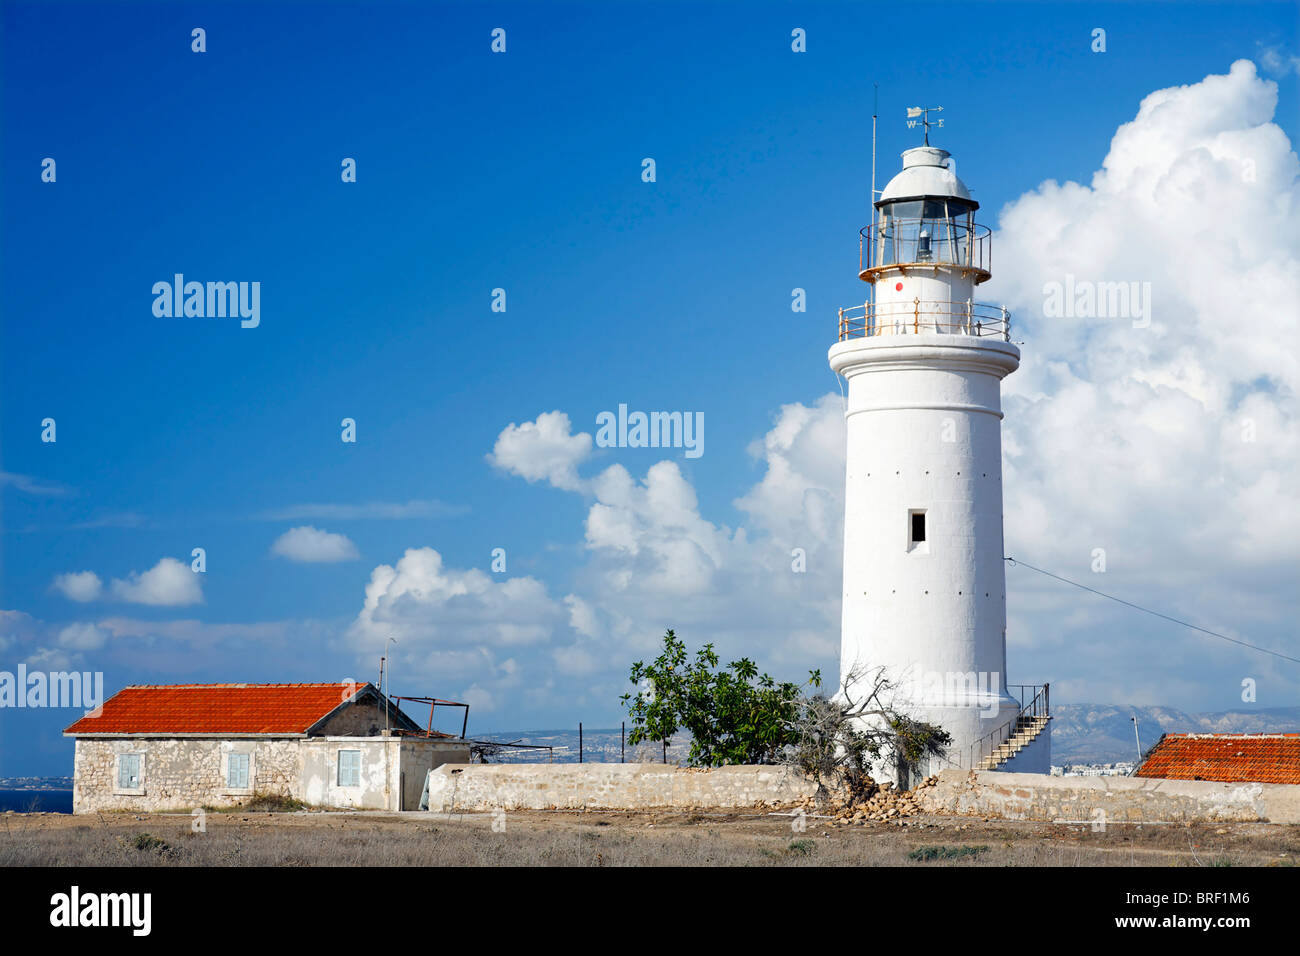 Faro, casa blanca, techo rojo, azul cielo, nubes blancas, Pafos, Pafos, Chipre, Europa Foto de stock